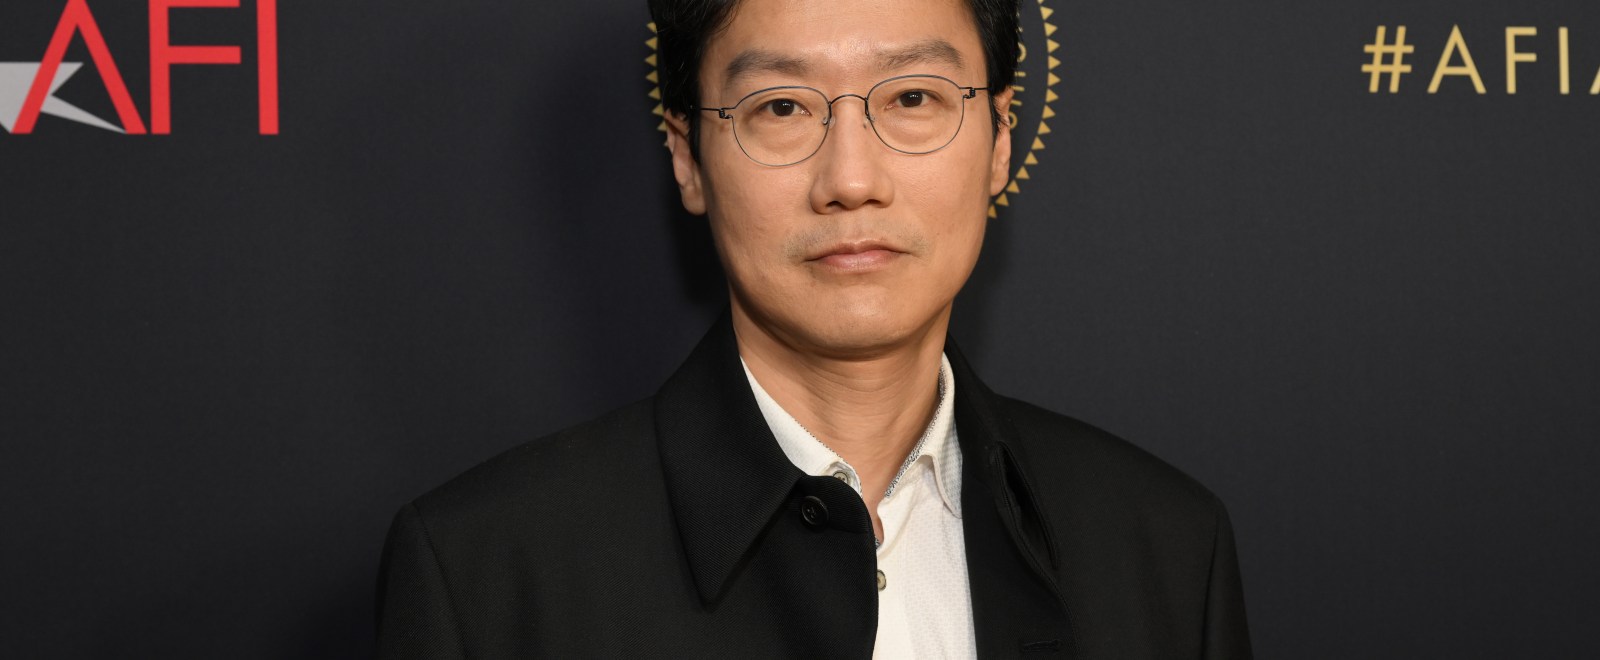 Squid Game creator Hwang Dong-hyuk